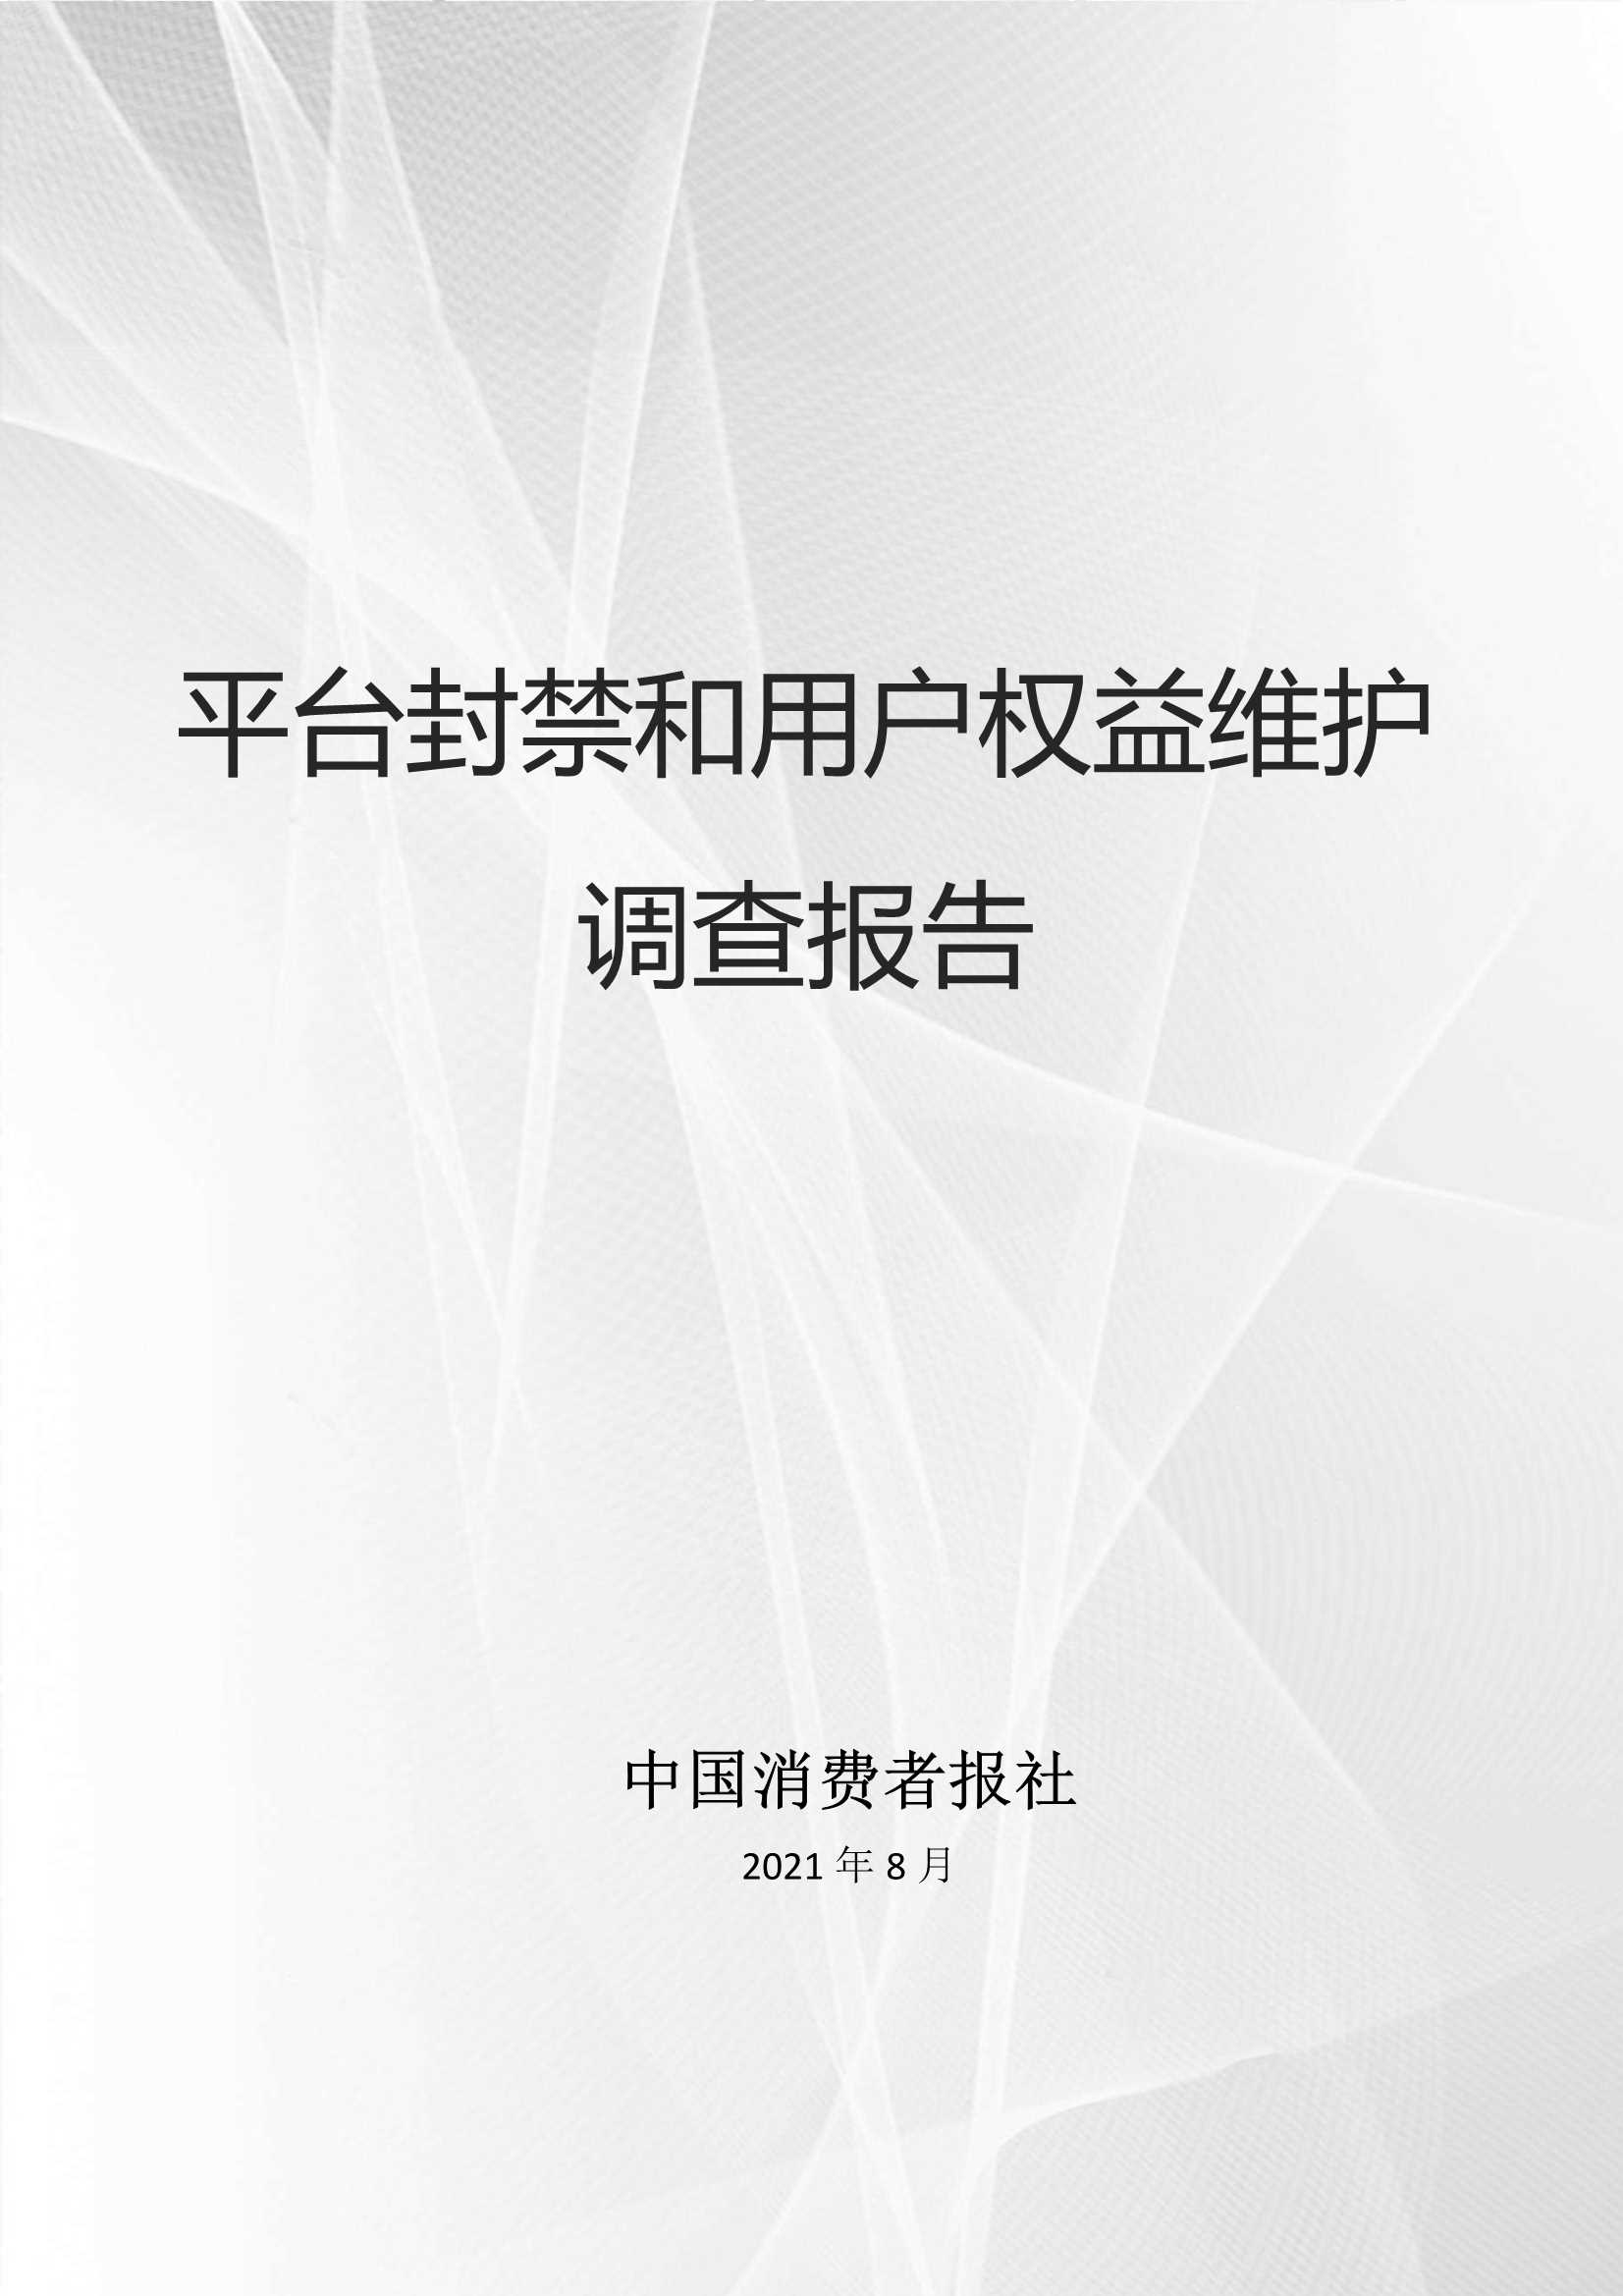 数字100&中国消费者报社-平台封禁与用户权益维护调查报告-2021.10-41页